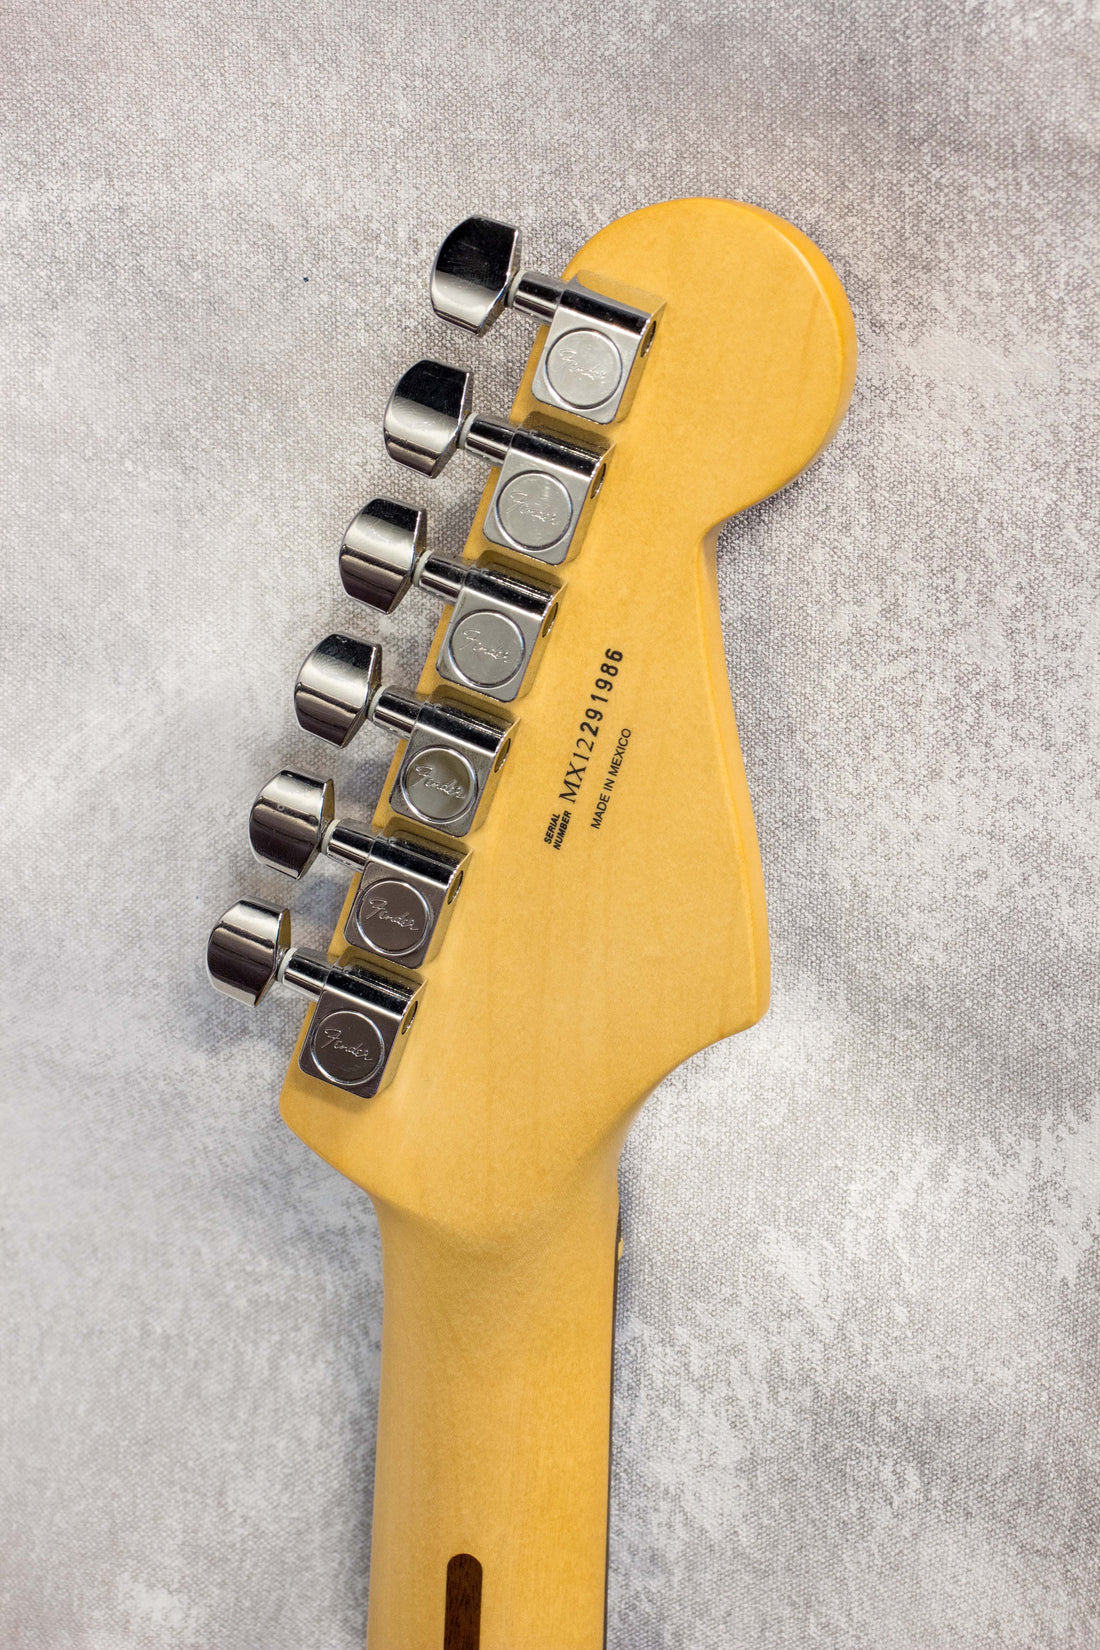 Fender Standard Stratocaster Sunburst Left Handed 2012